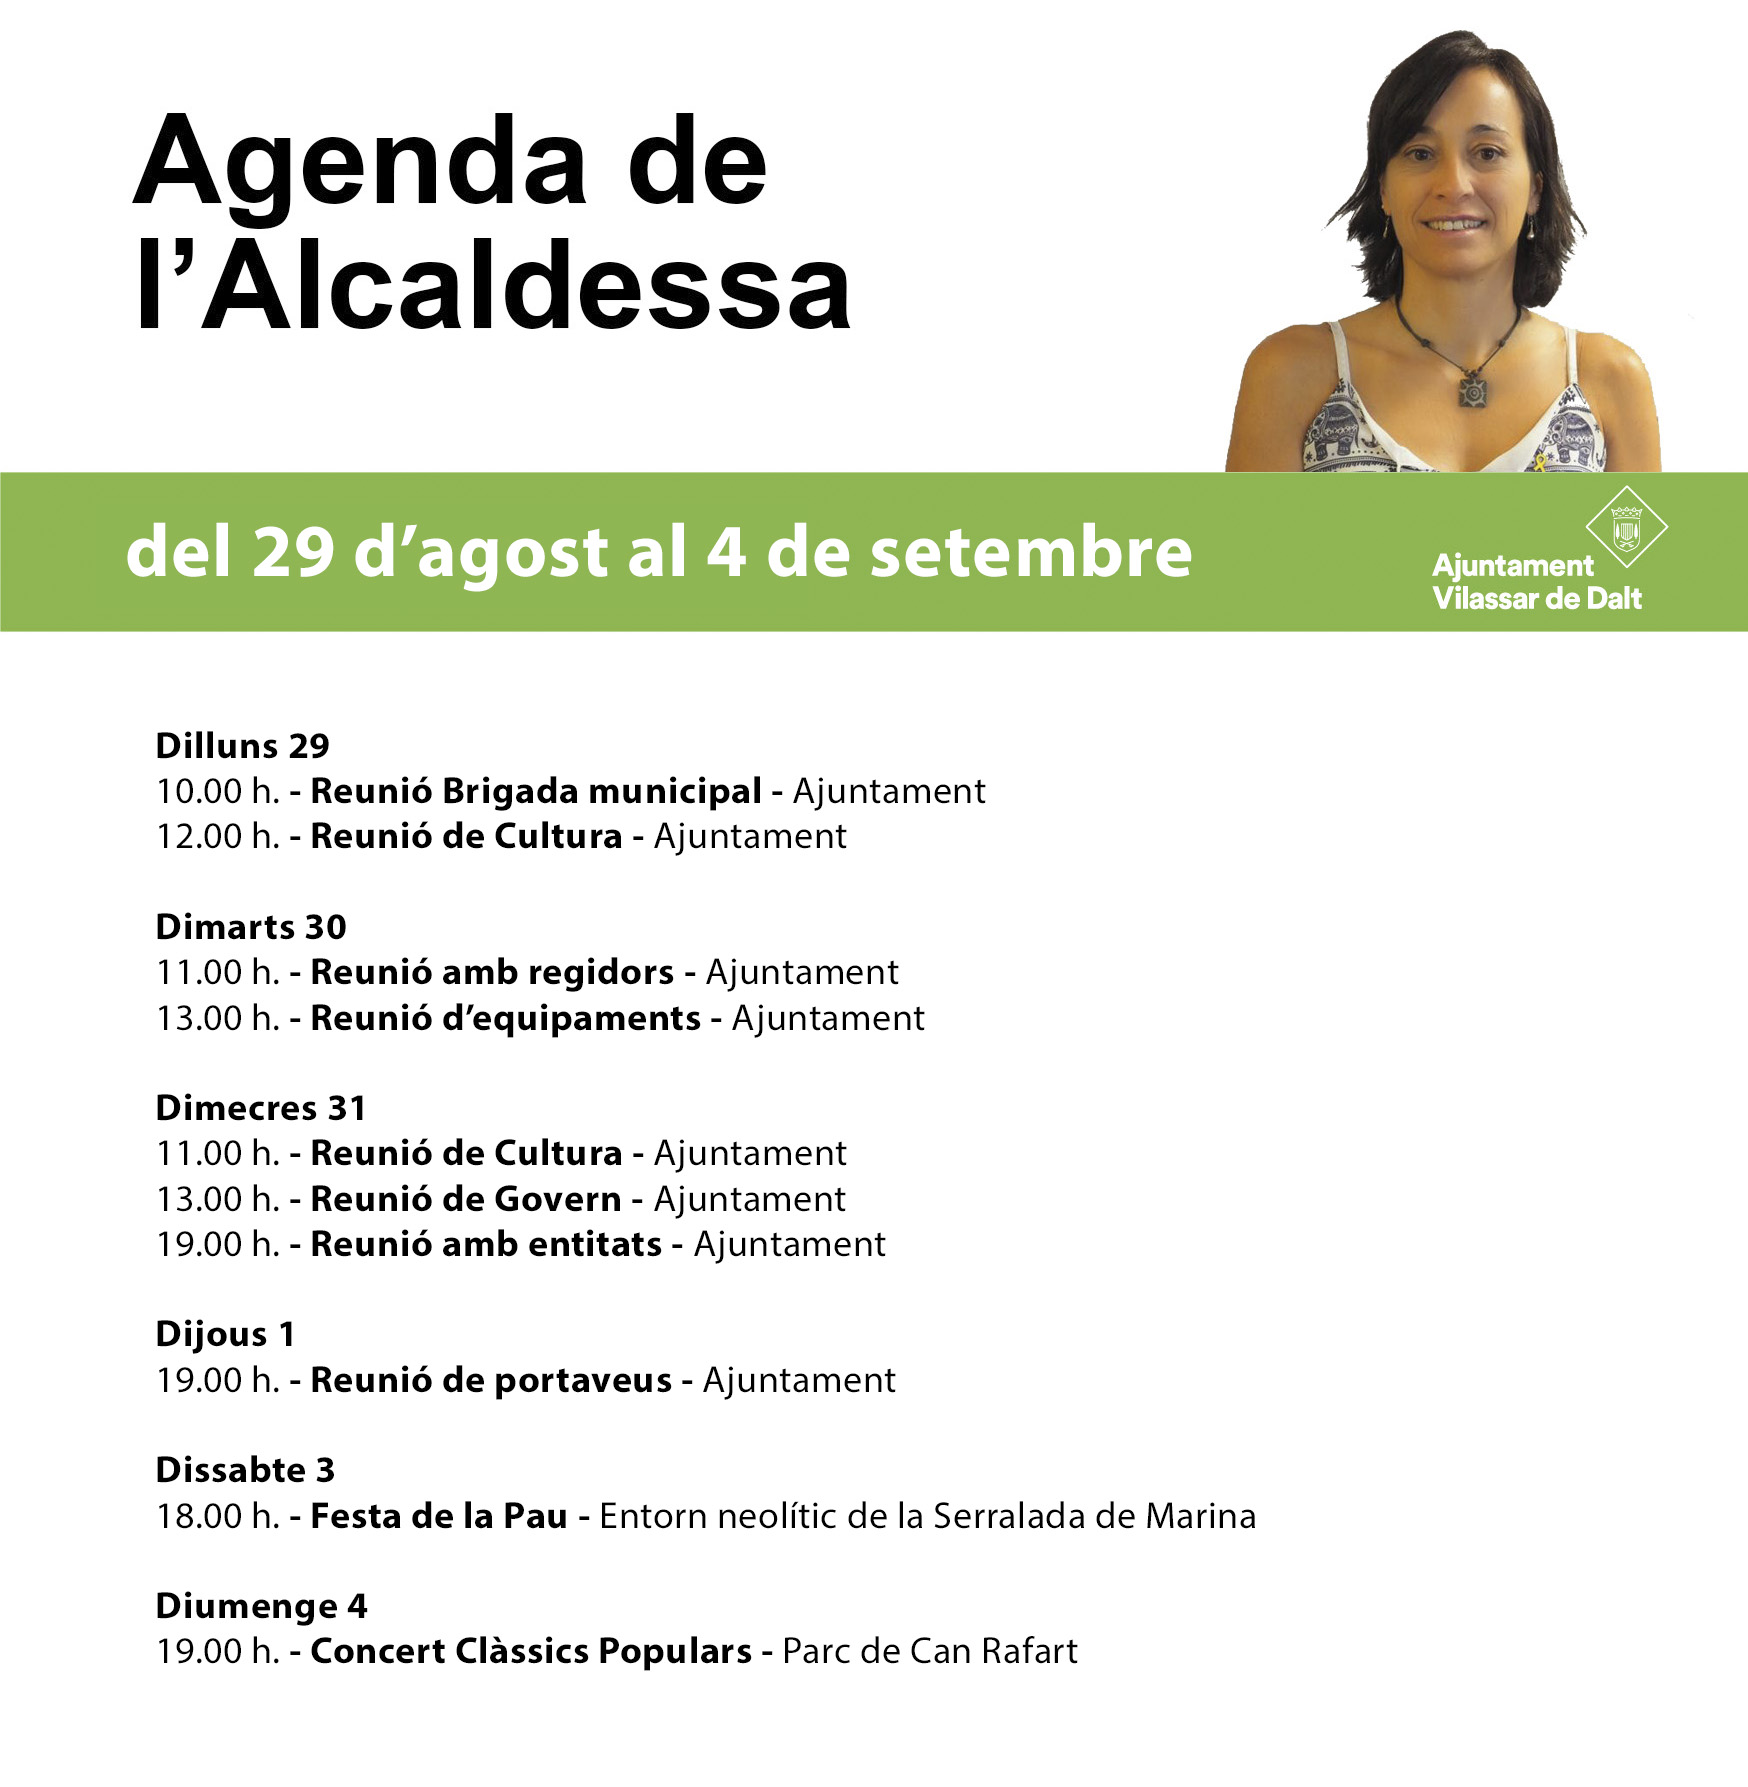 Agenda de l'alcaldessa. Del 29 d'agost al 4 de setembre